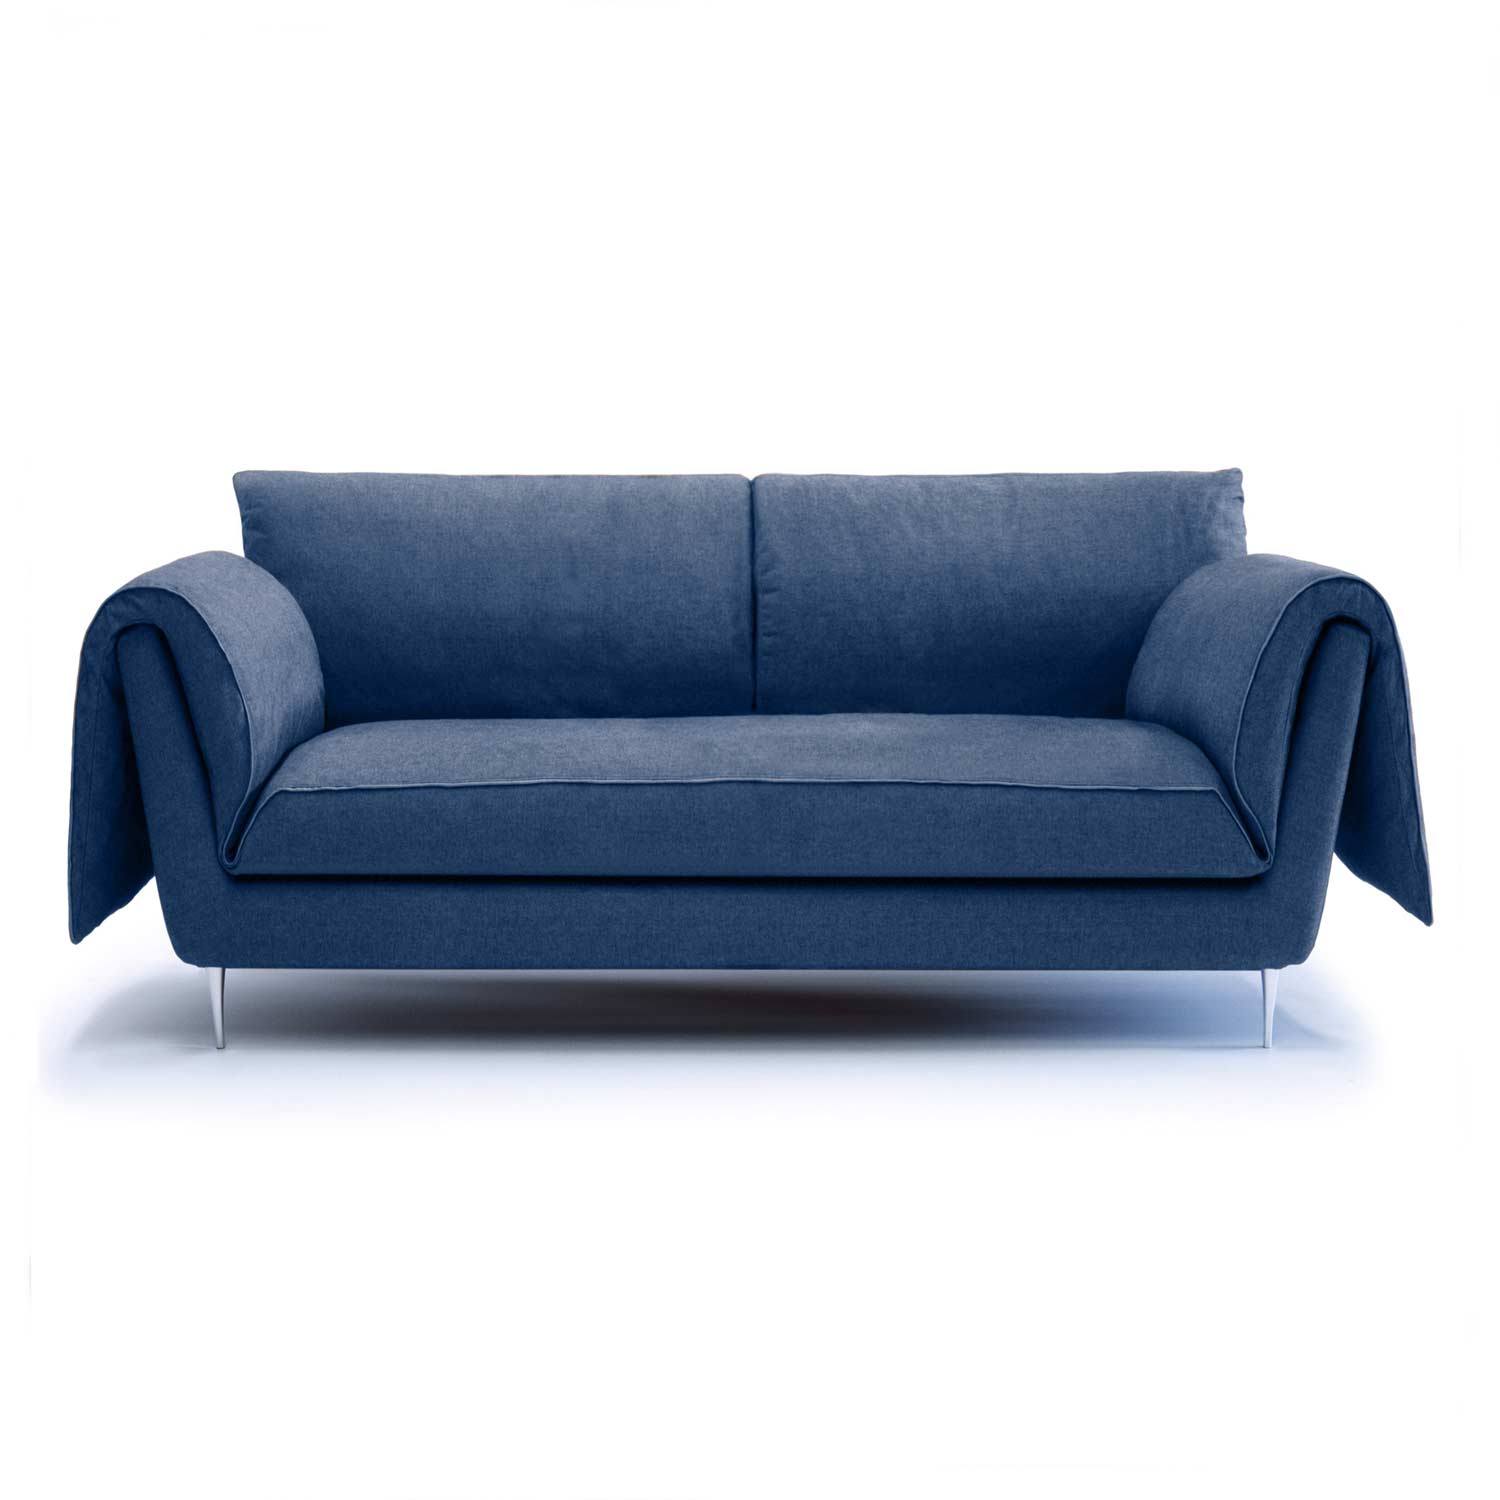 Inviting Living Space - Casquet Sofa